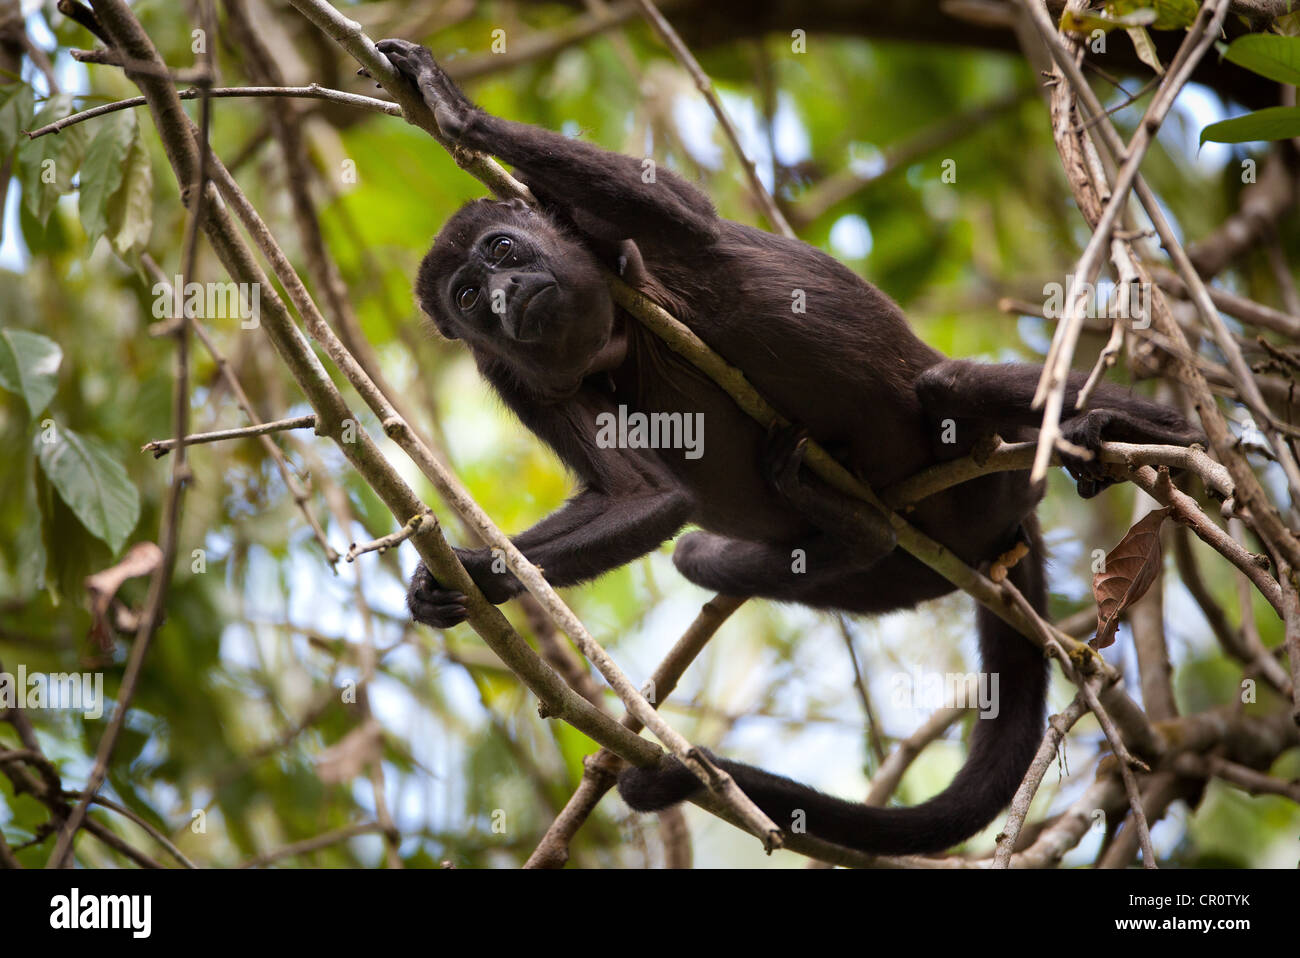 Panama fauna selvatica con una scimmia Howler Manled, Alouatta palliata, nella foresta pluviale del parco nazionale di Soberania, Repubblica di Panama, America Centrale. Foto Stock